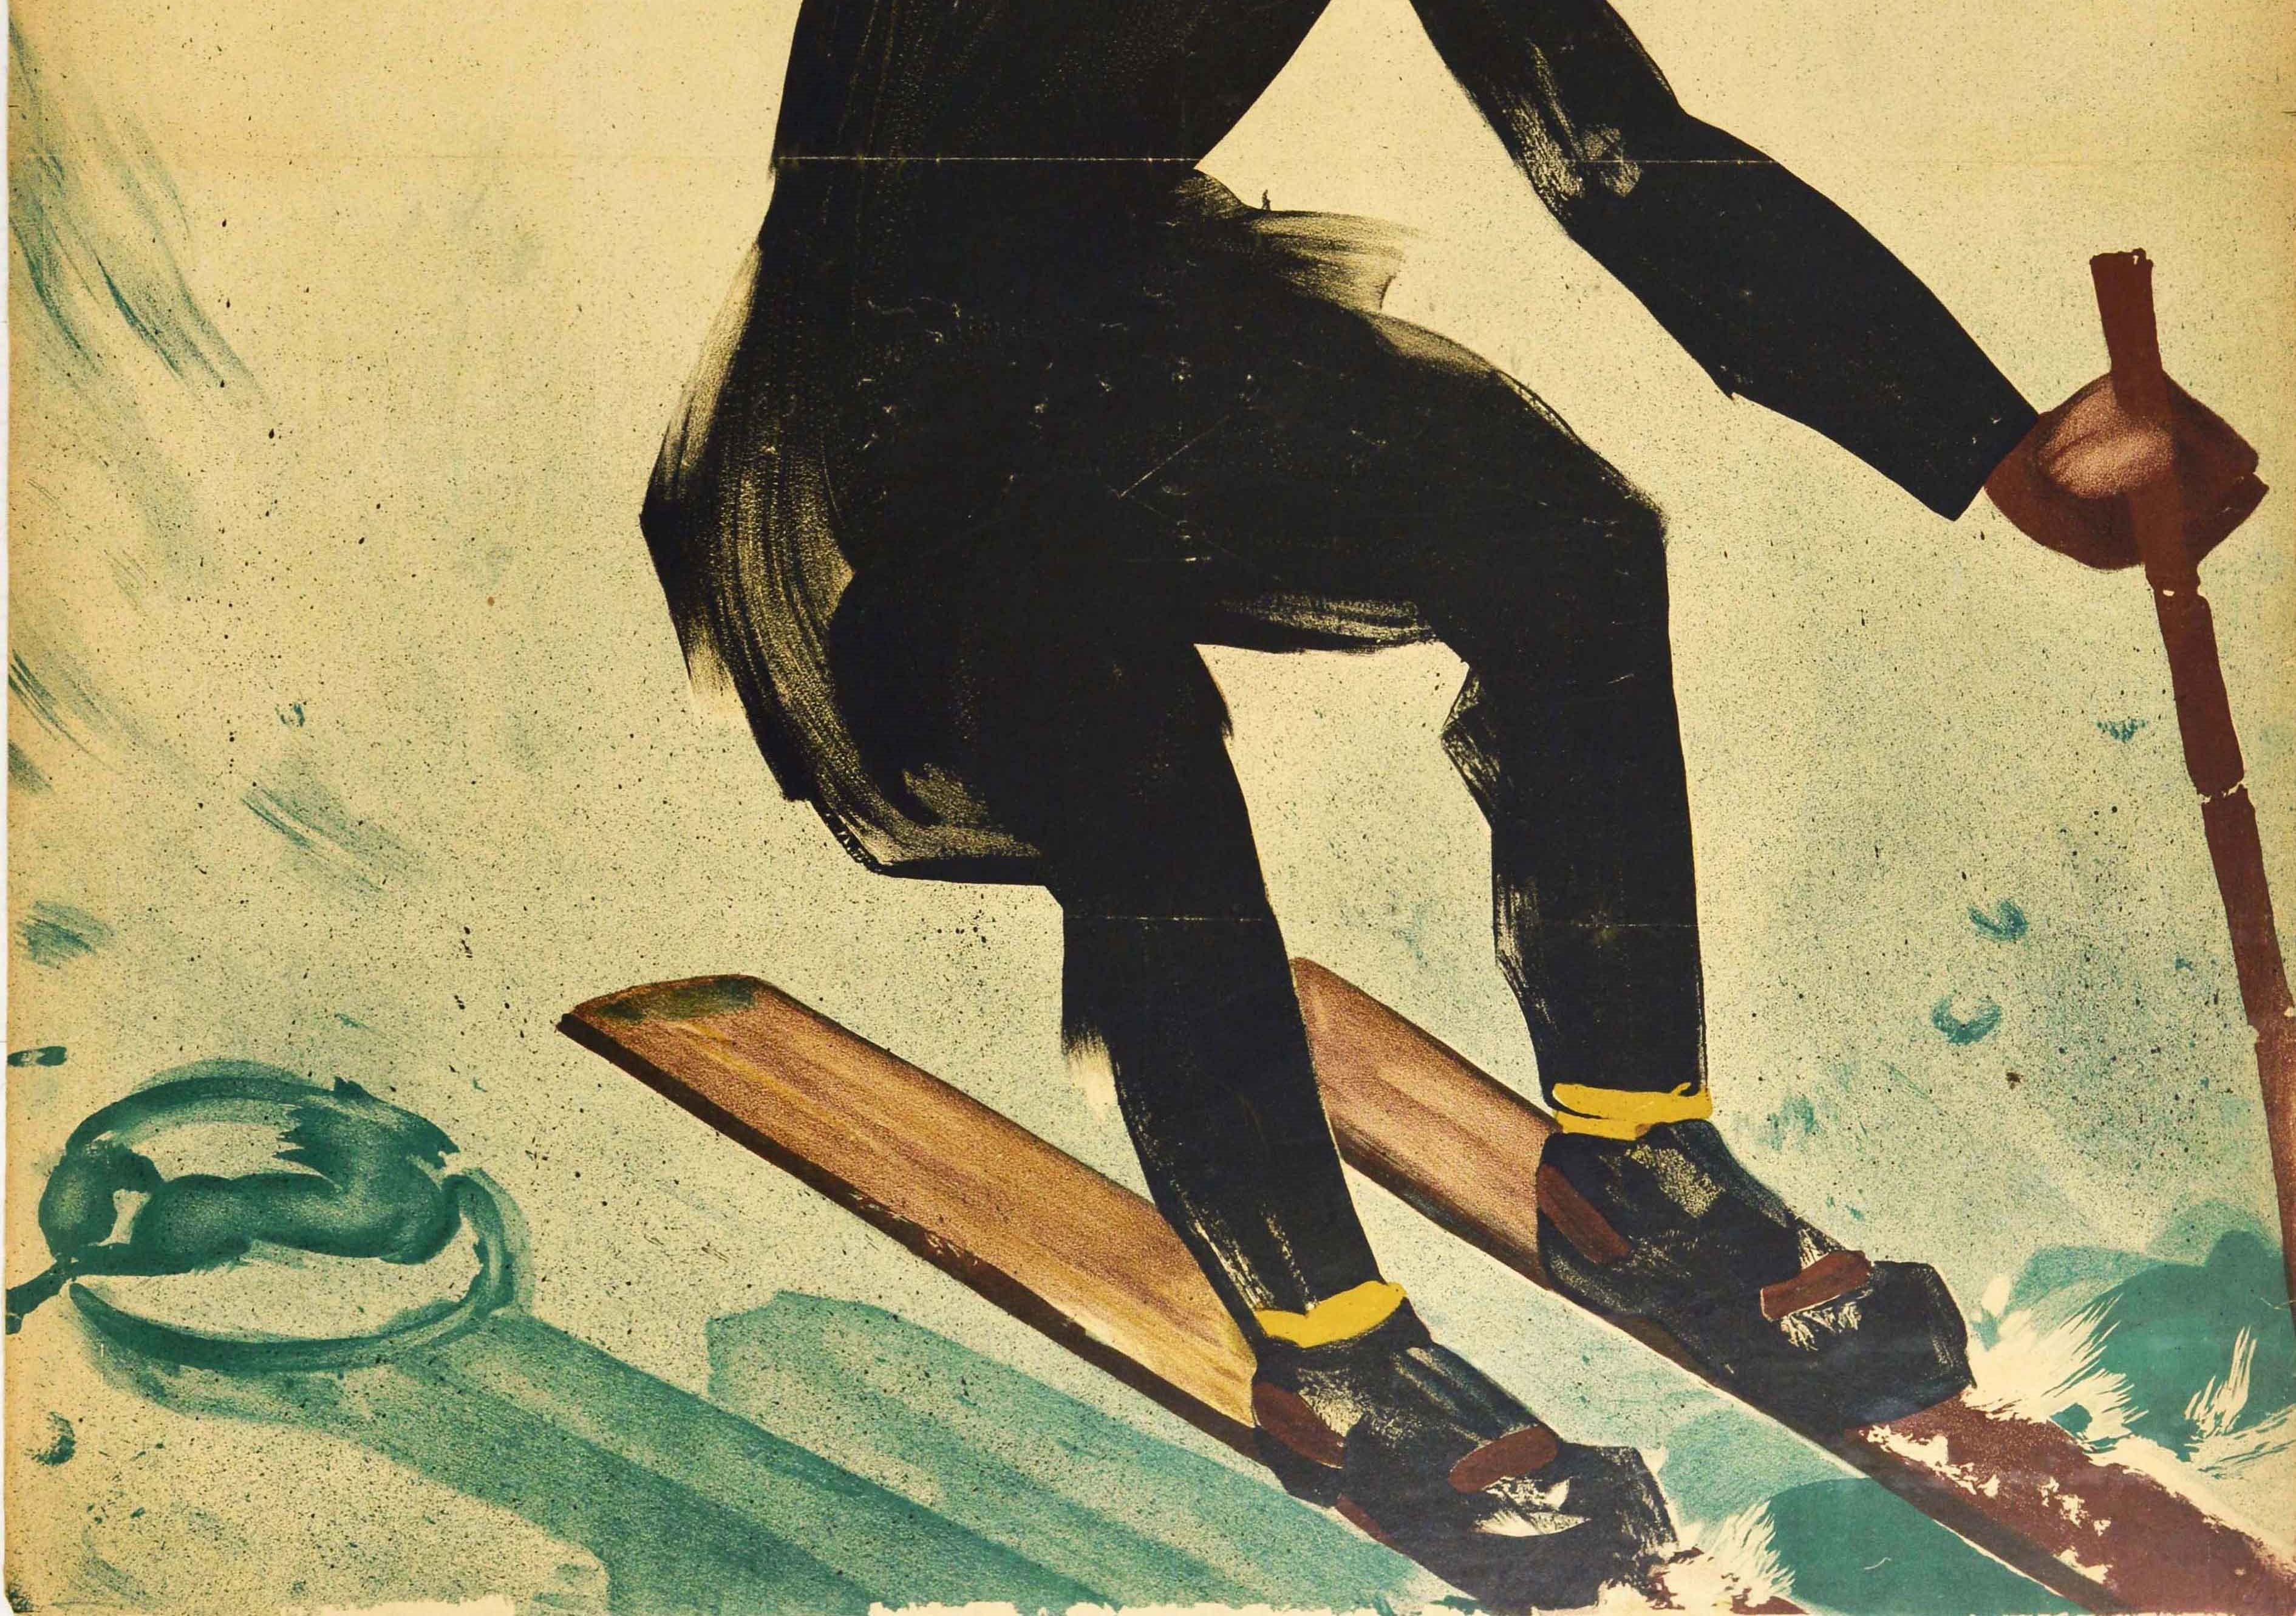 Original Vintage-Skifahren-Poster, Wintersport, Deutschland, Downhill, Skier, Kunstwerk (Beige), Print, von Karl E. Biebrach